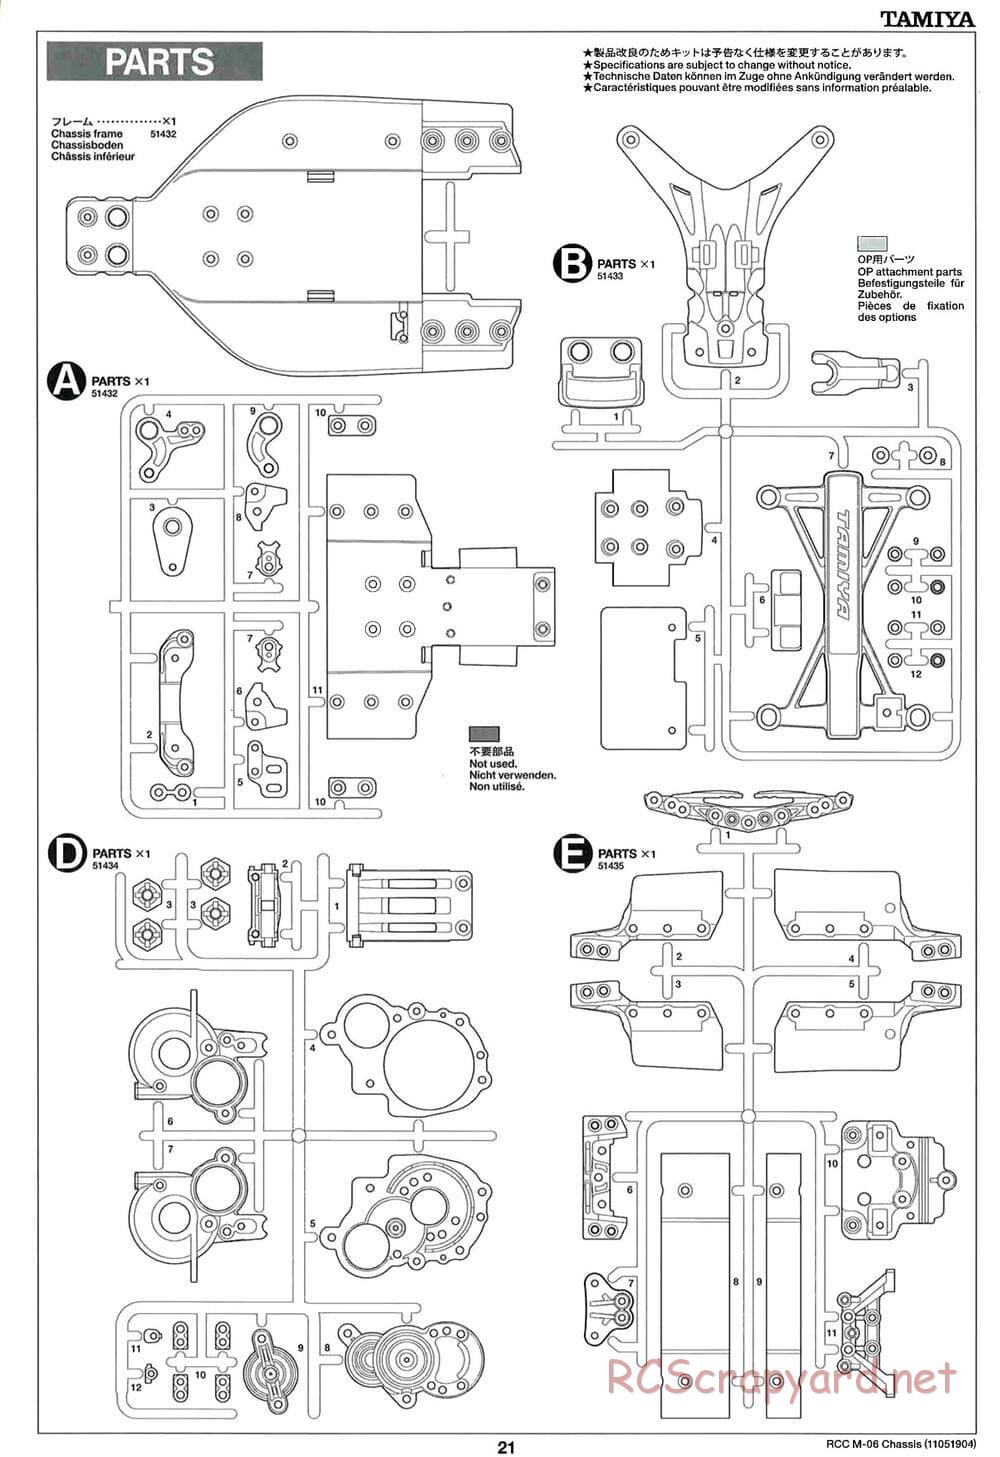 Tamiya - M-06 Chassis - Manual - Page 21